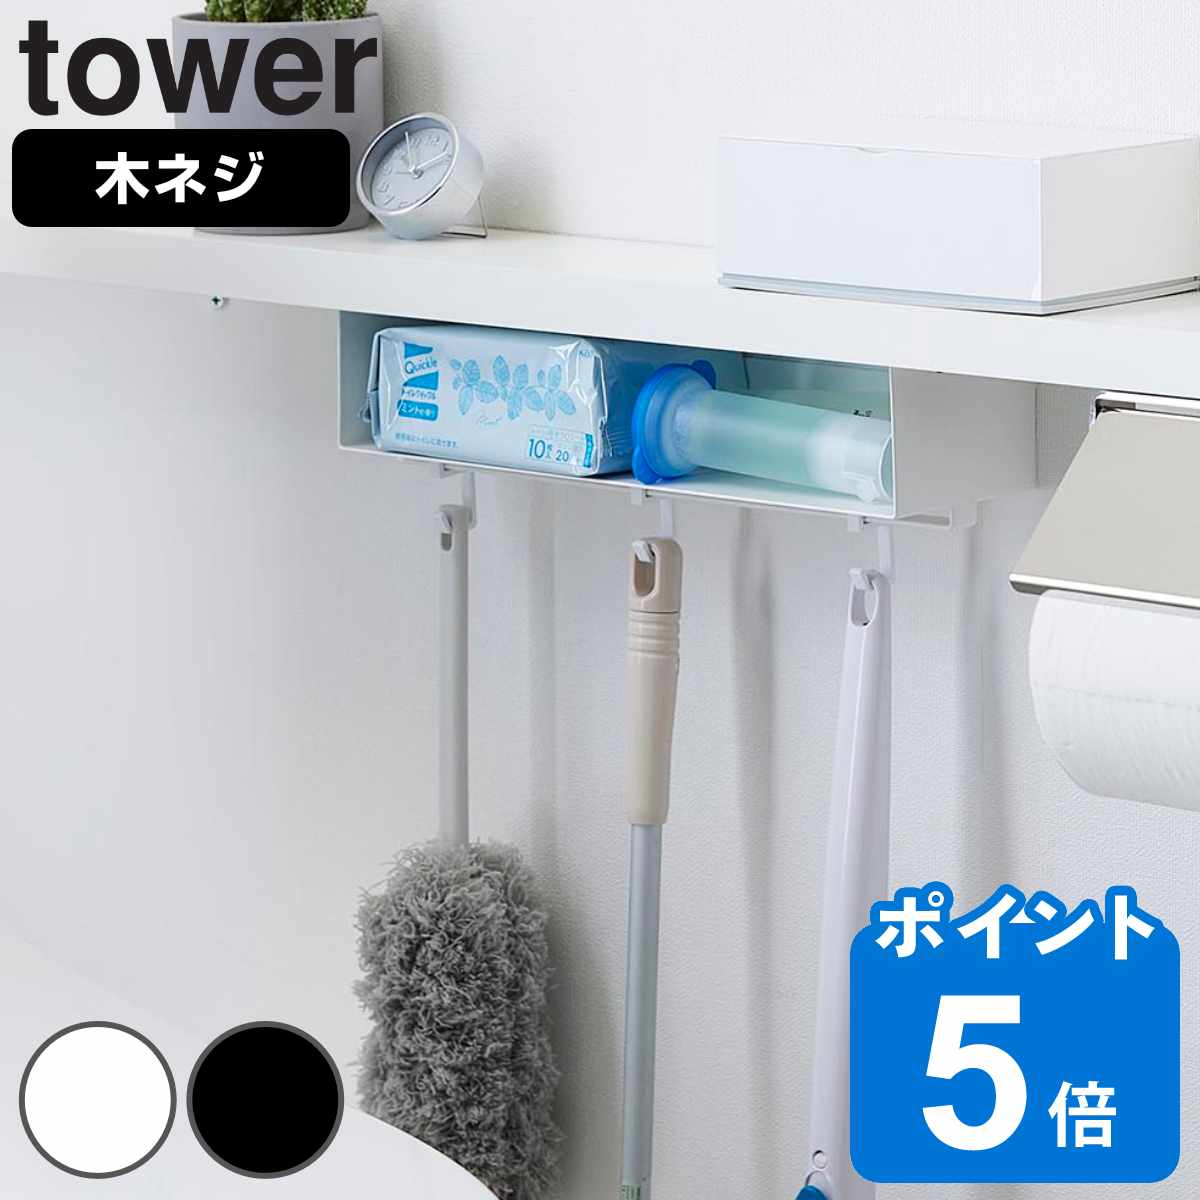 山崎実業 tower トイレ棚下収納ラック タワー